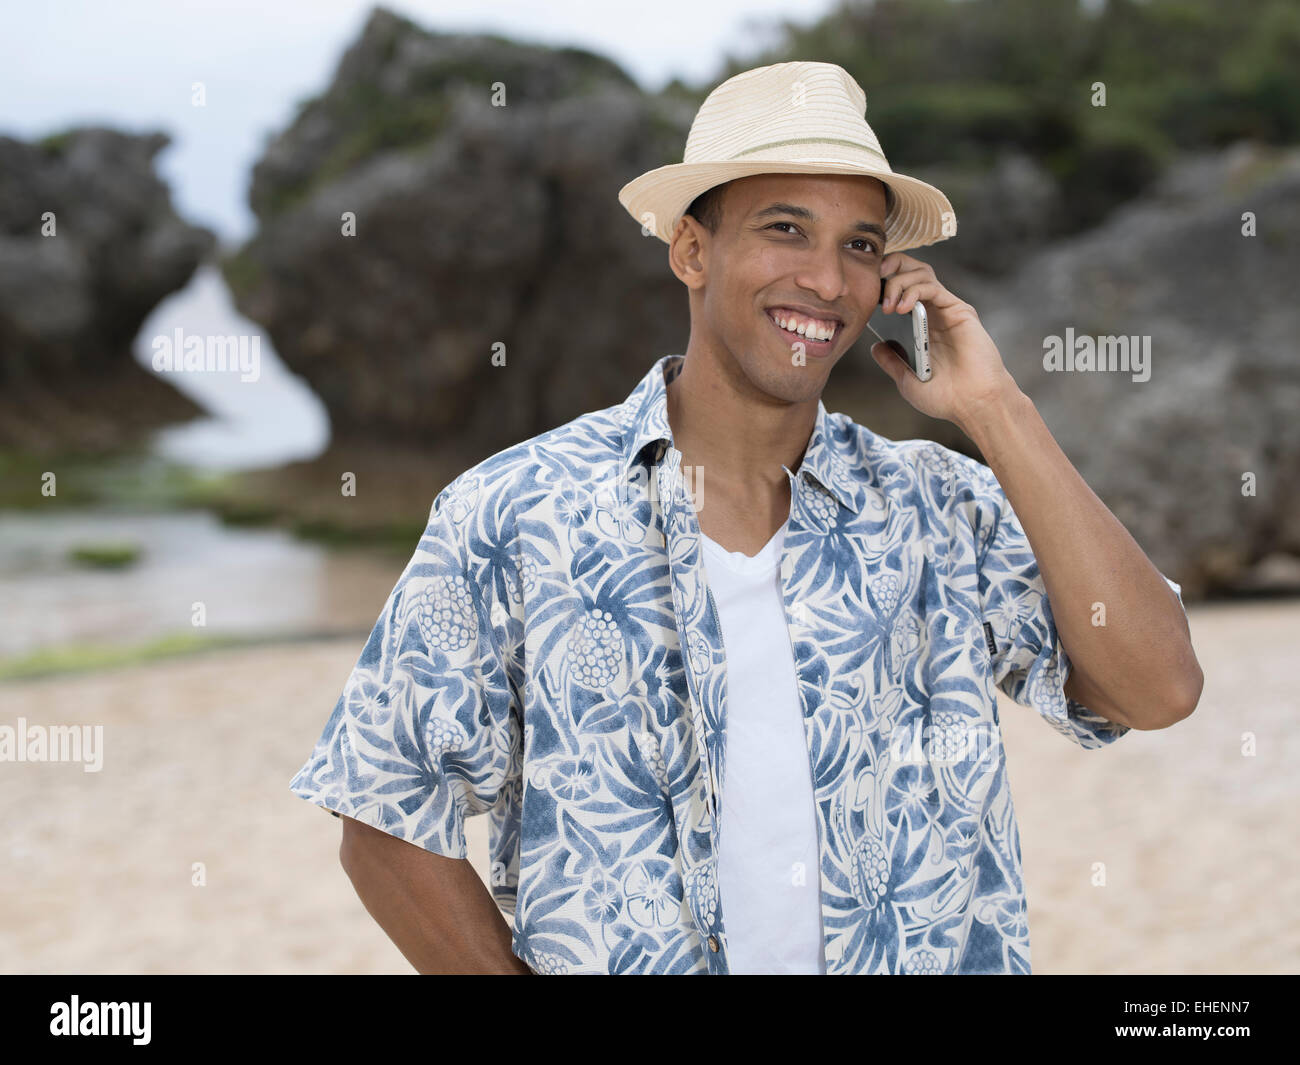 L'homme qui téléphone ou téléphoner avec Apple iphone 6 smartphone pendant que sur la plage Banque D'Images